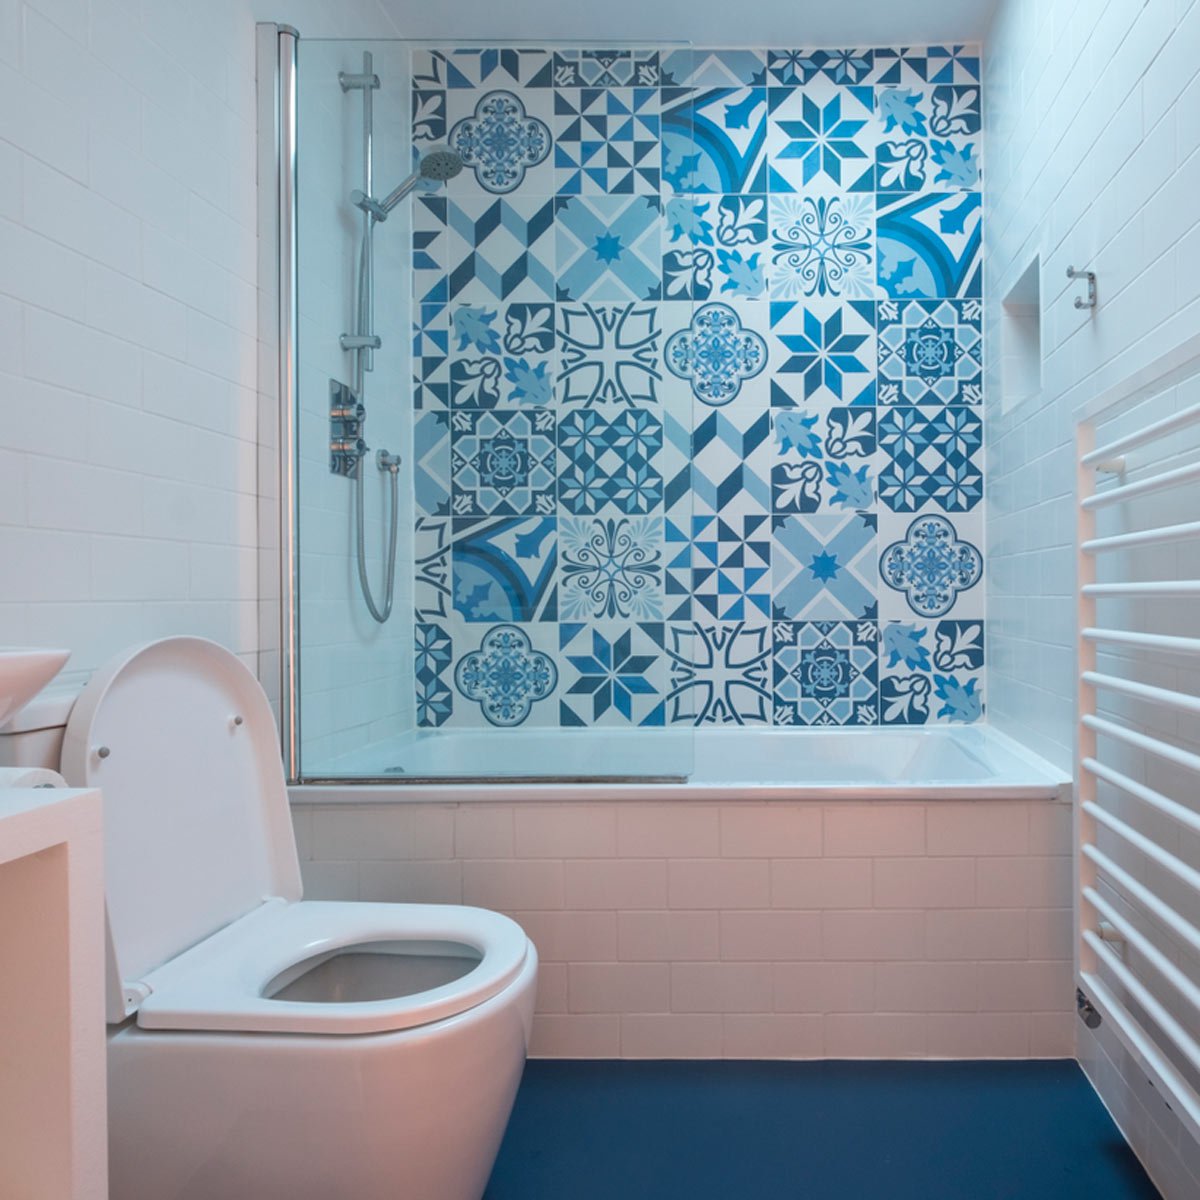 10 гениальных идей для маленьких ванных комнат, которые помогут увеличить пространство - image2